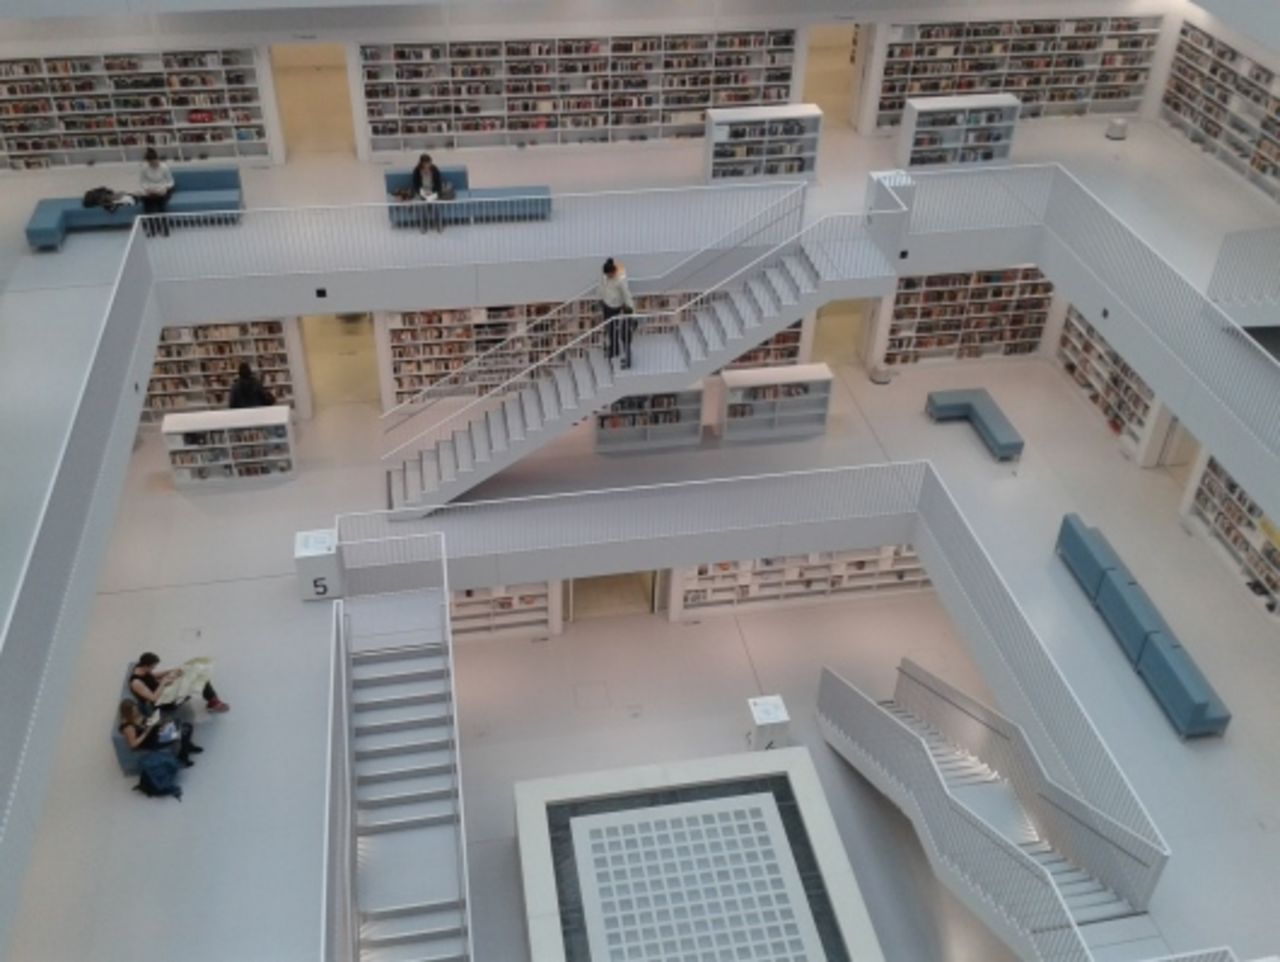 Impression des Innenraumes der Stadtbibliothek im Europaviertel, die in 2011 eröffnet wurde. 